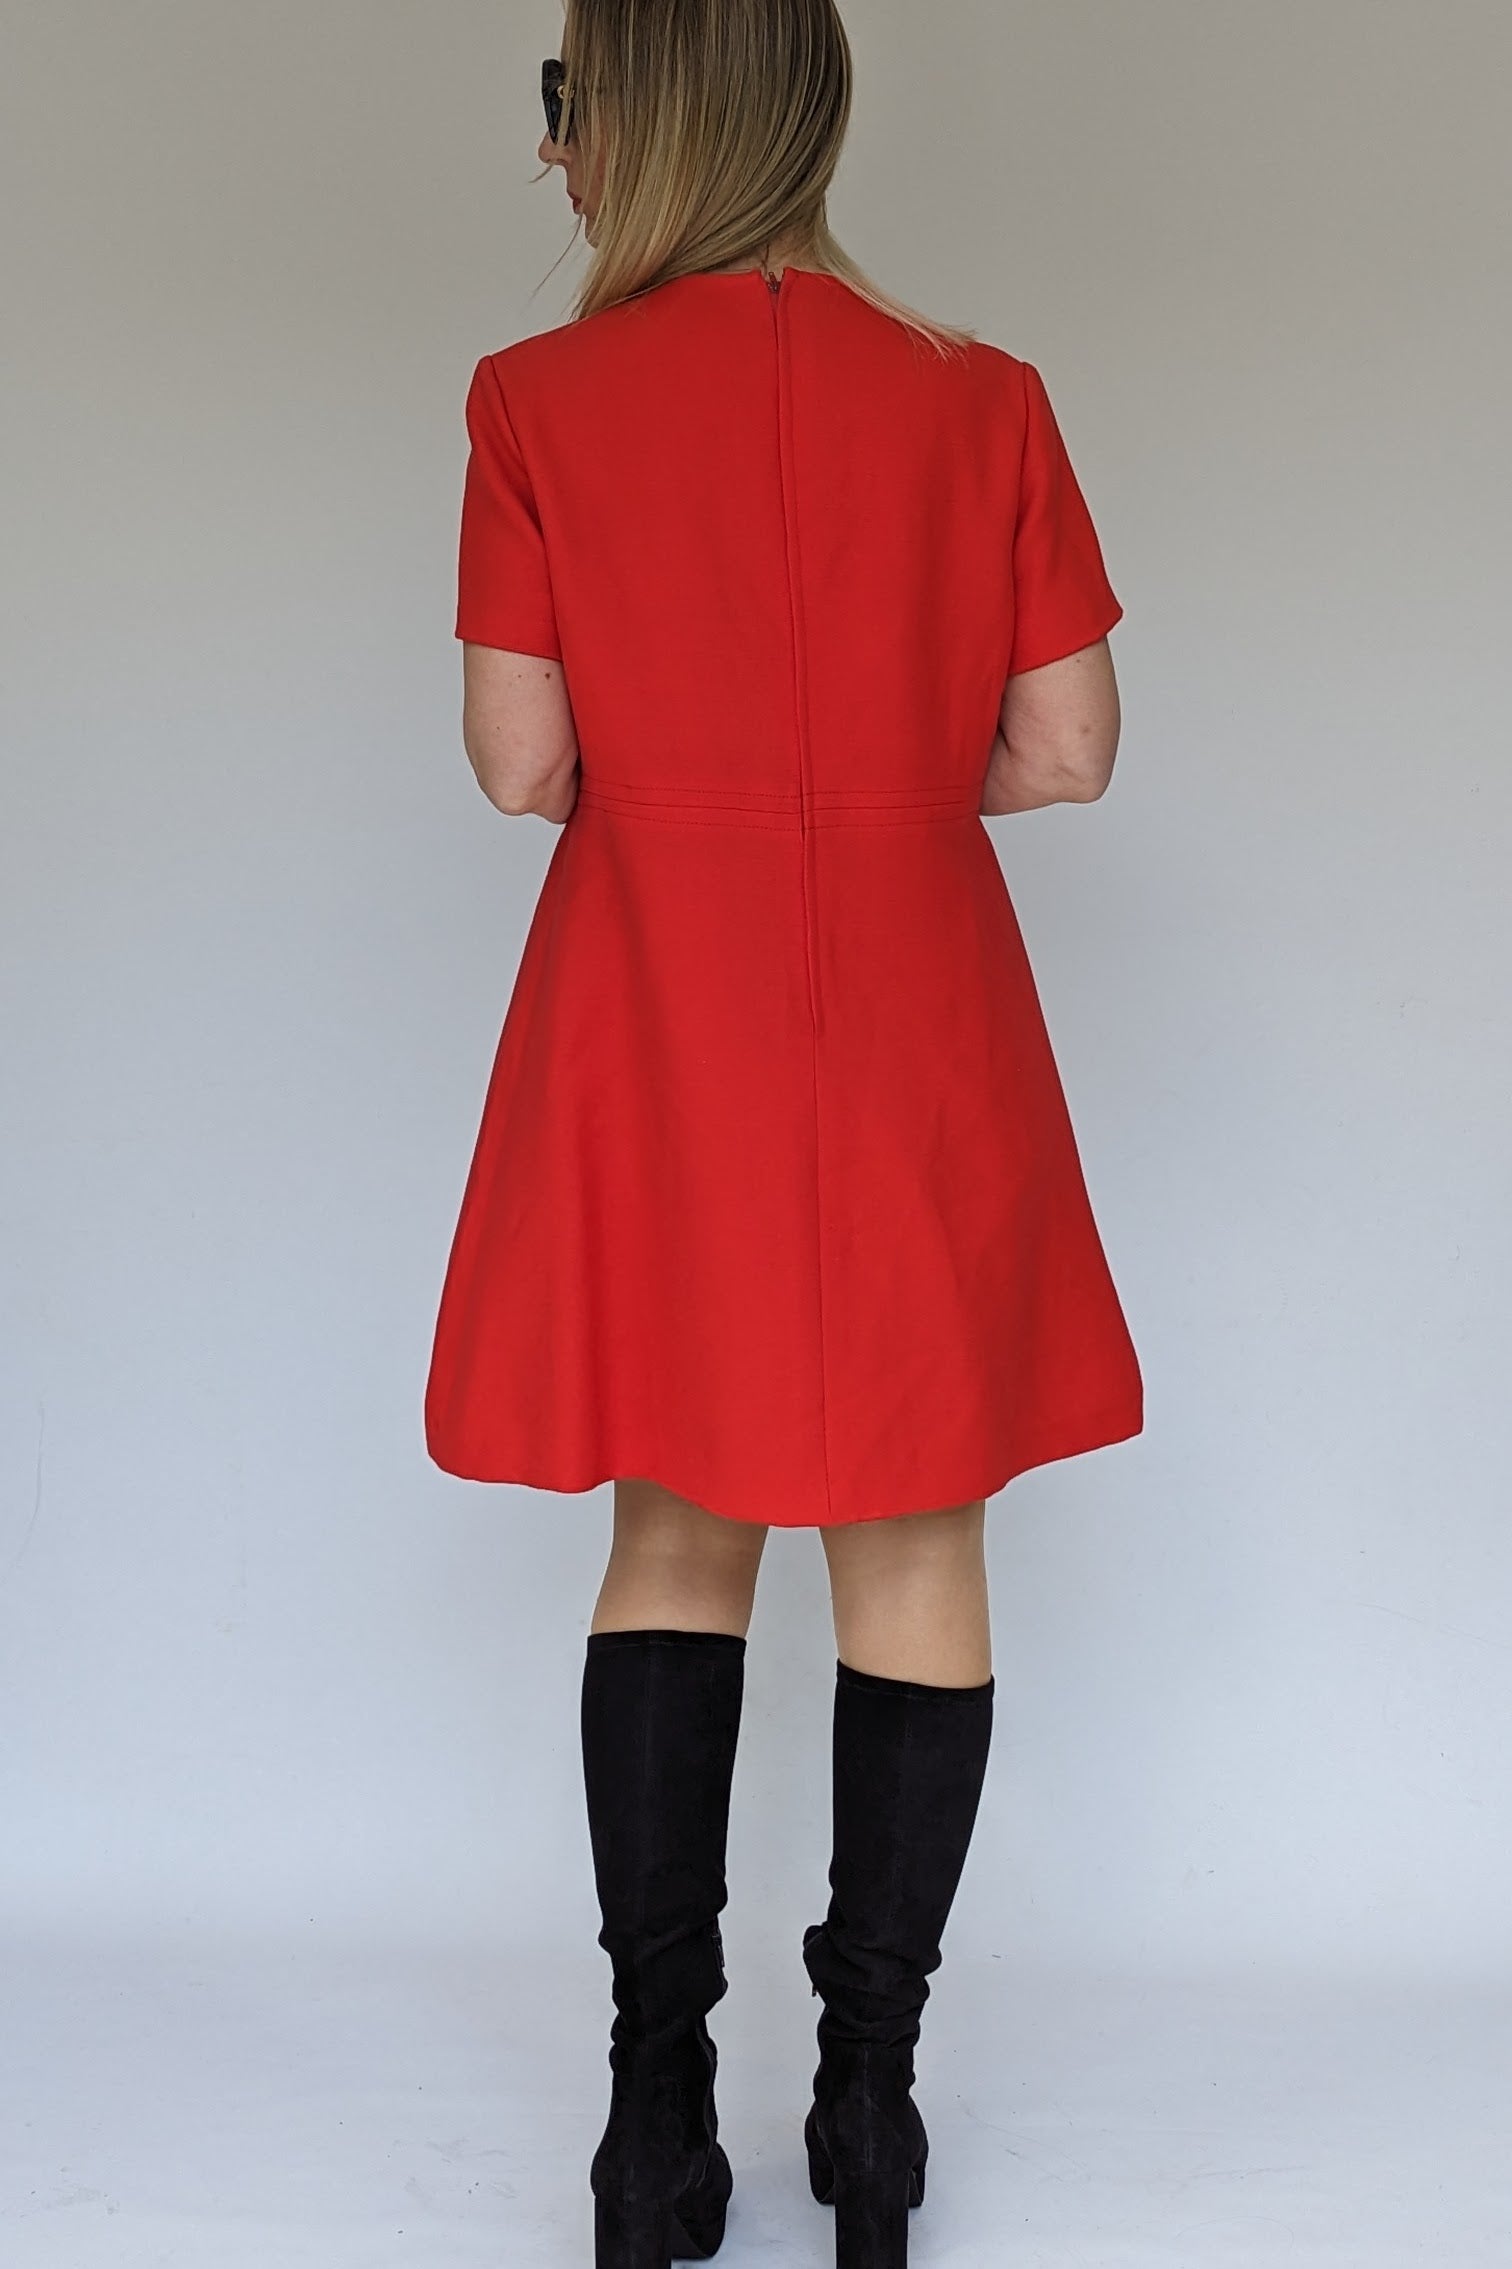 1960s vintage red wool dress